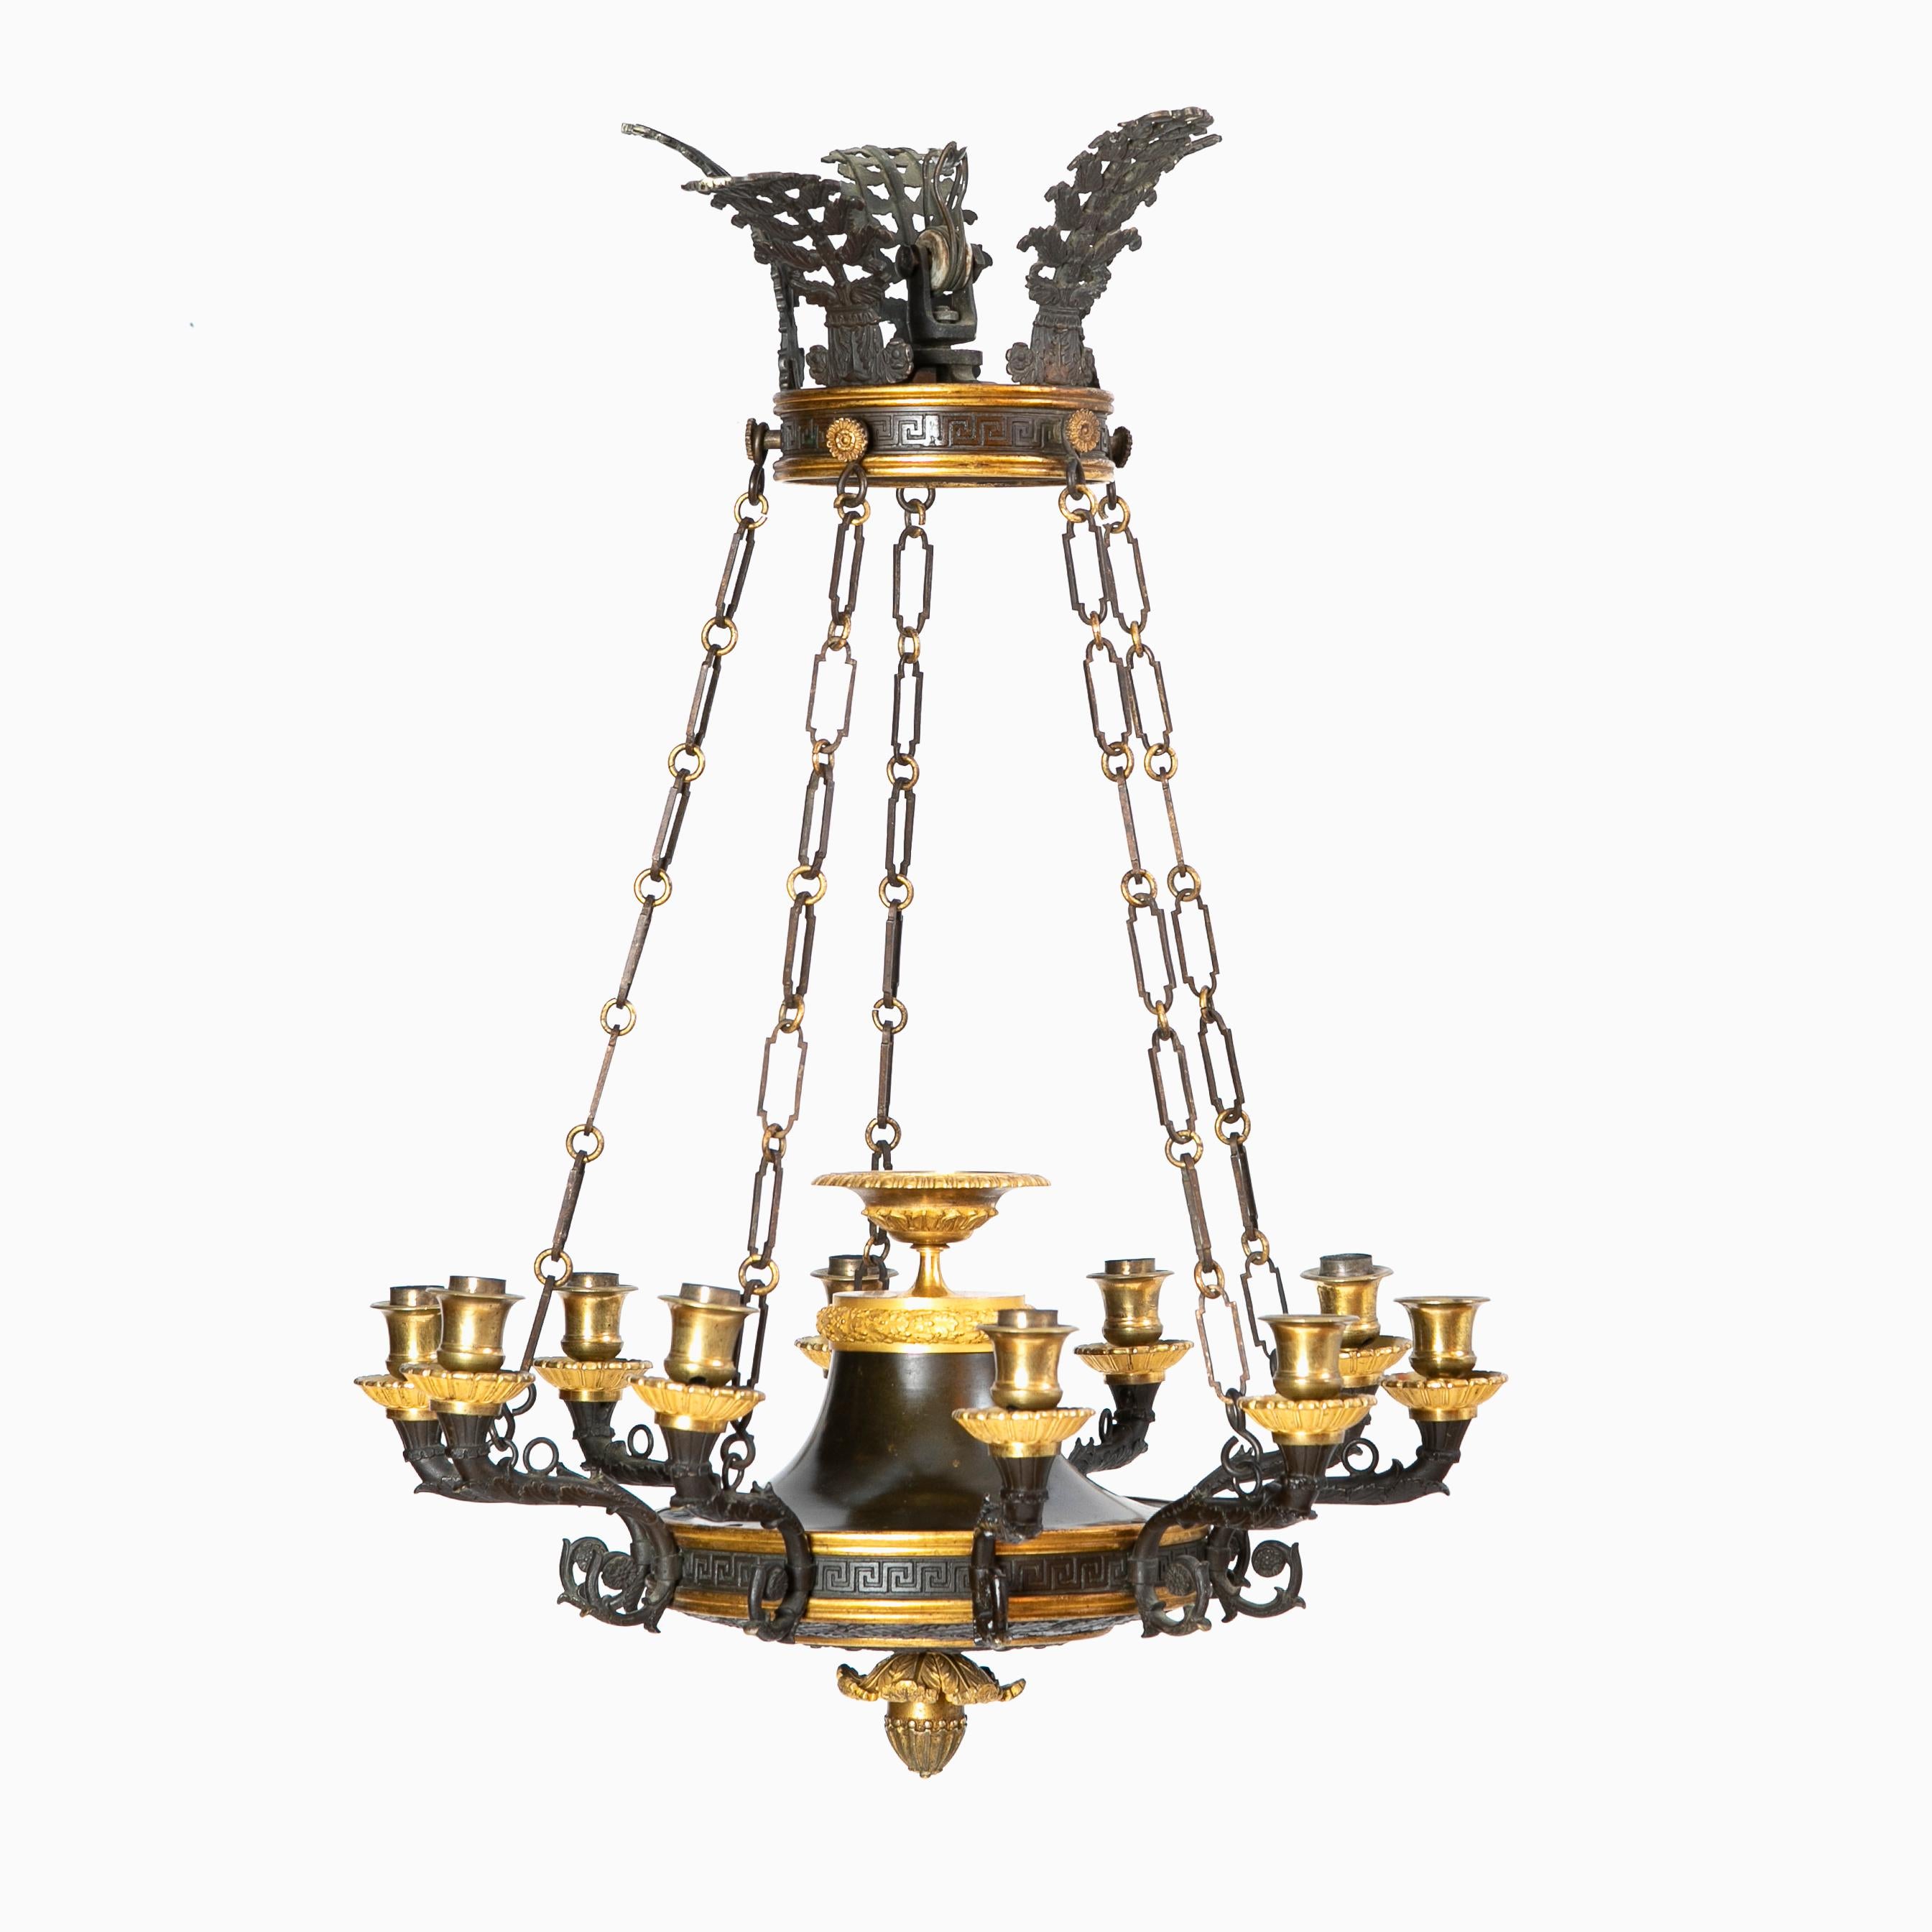 Un lustre français Charles X à 10 bras en bronze patiné et bronze doré.
Riche en détails avec une couronne ornée d'un décor à la grecque et une couronne de feuilles polies noires. Des chaînes d'origine supportant un luminaire circulaire en forme de